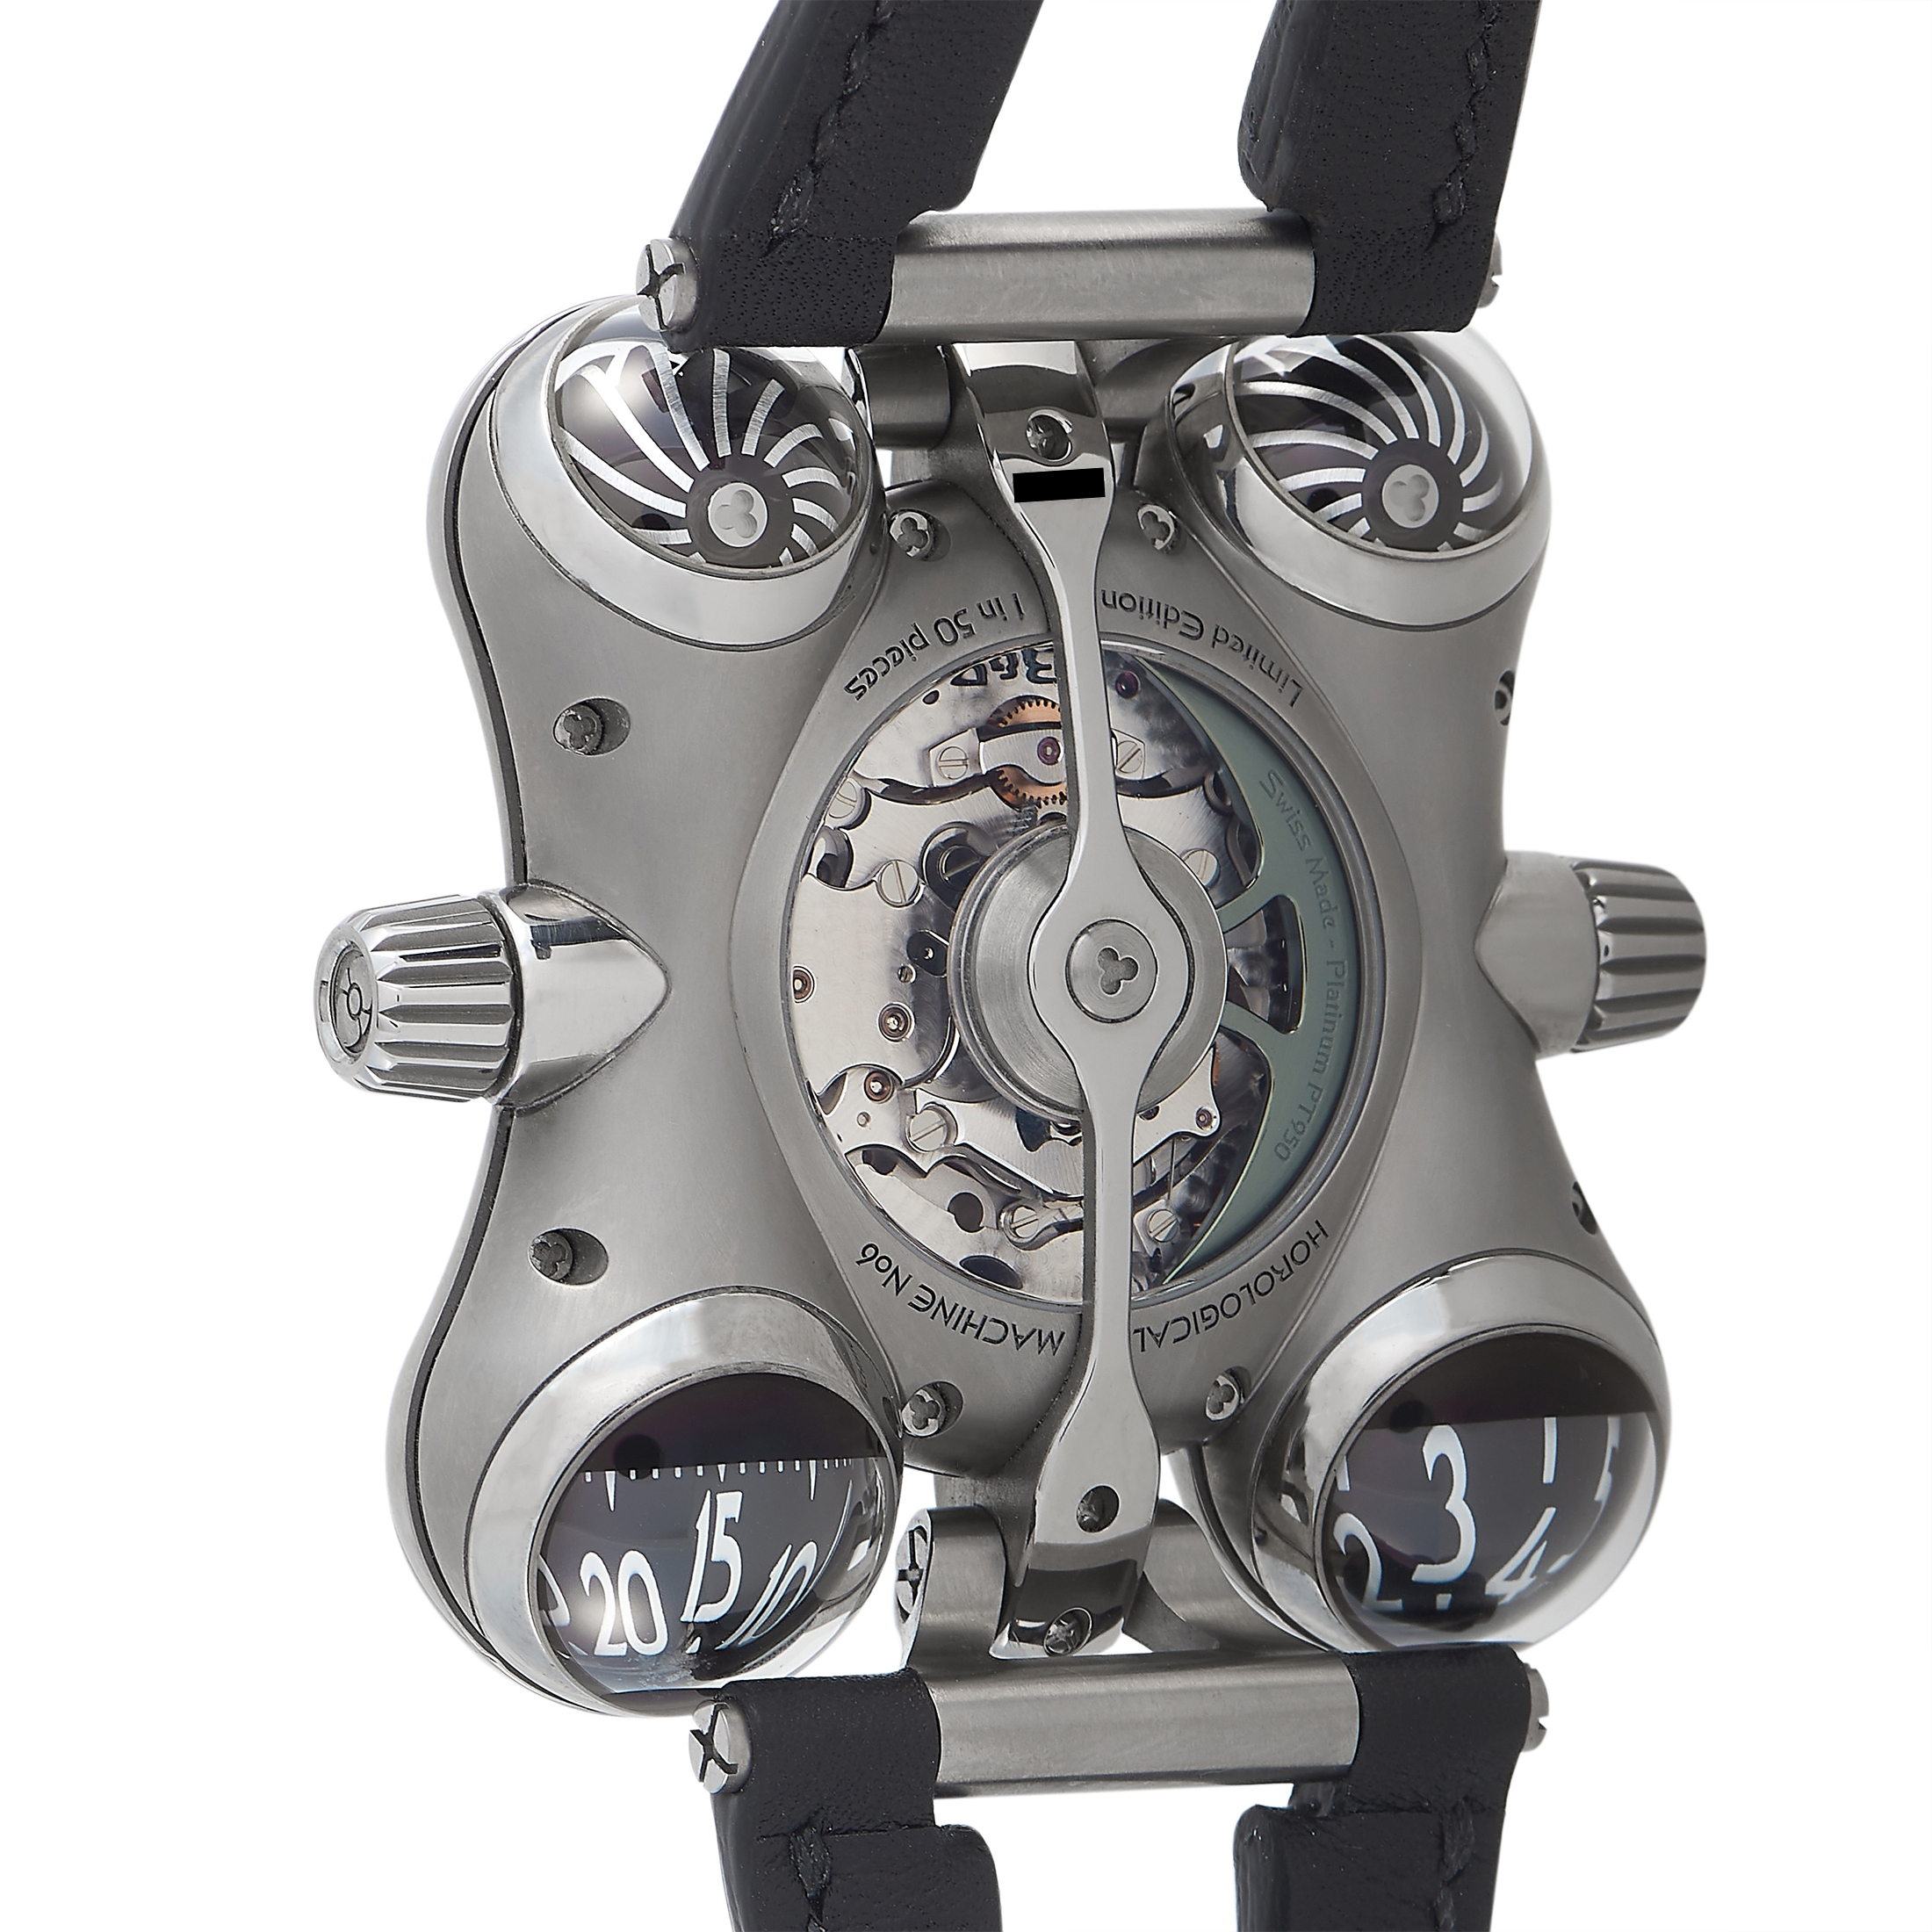 MB & F HM6 Space Pirate Titanium Watch